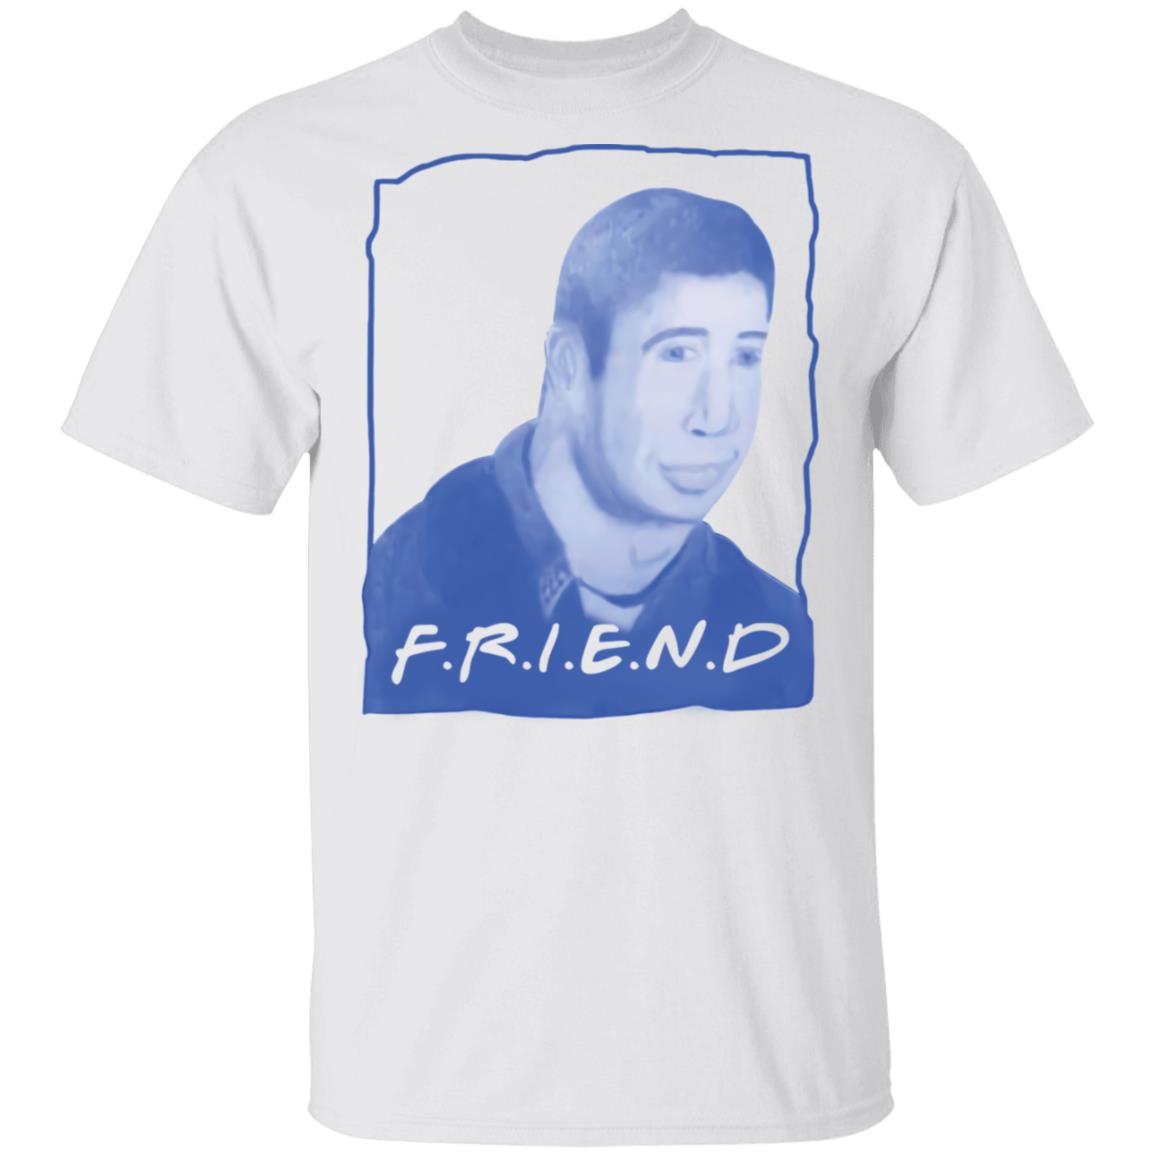 Warped Ross friend shirt